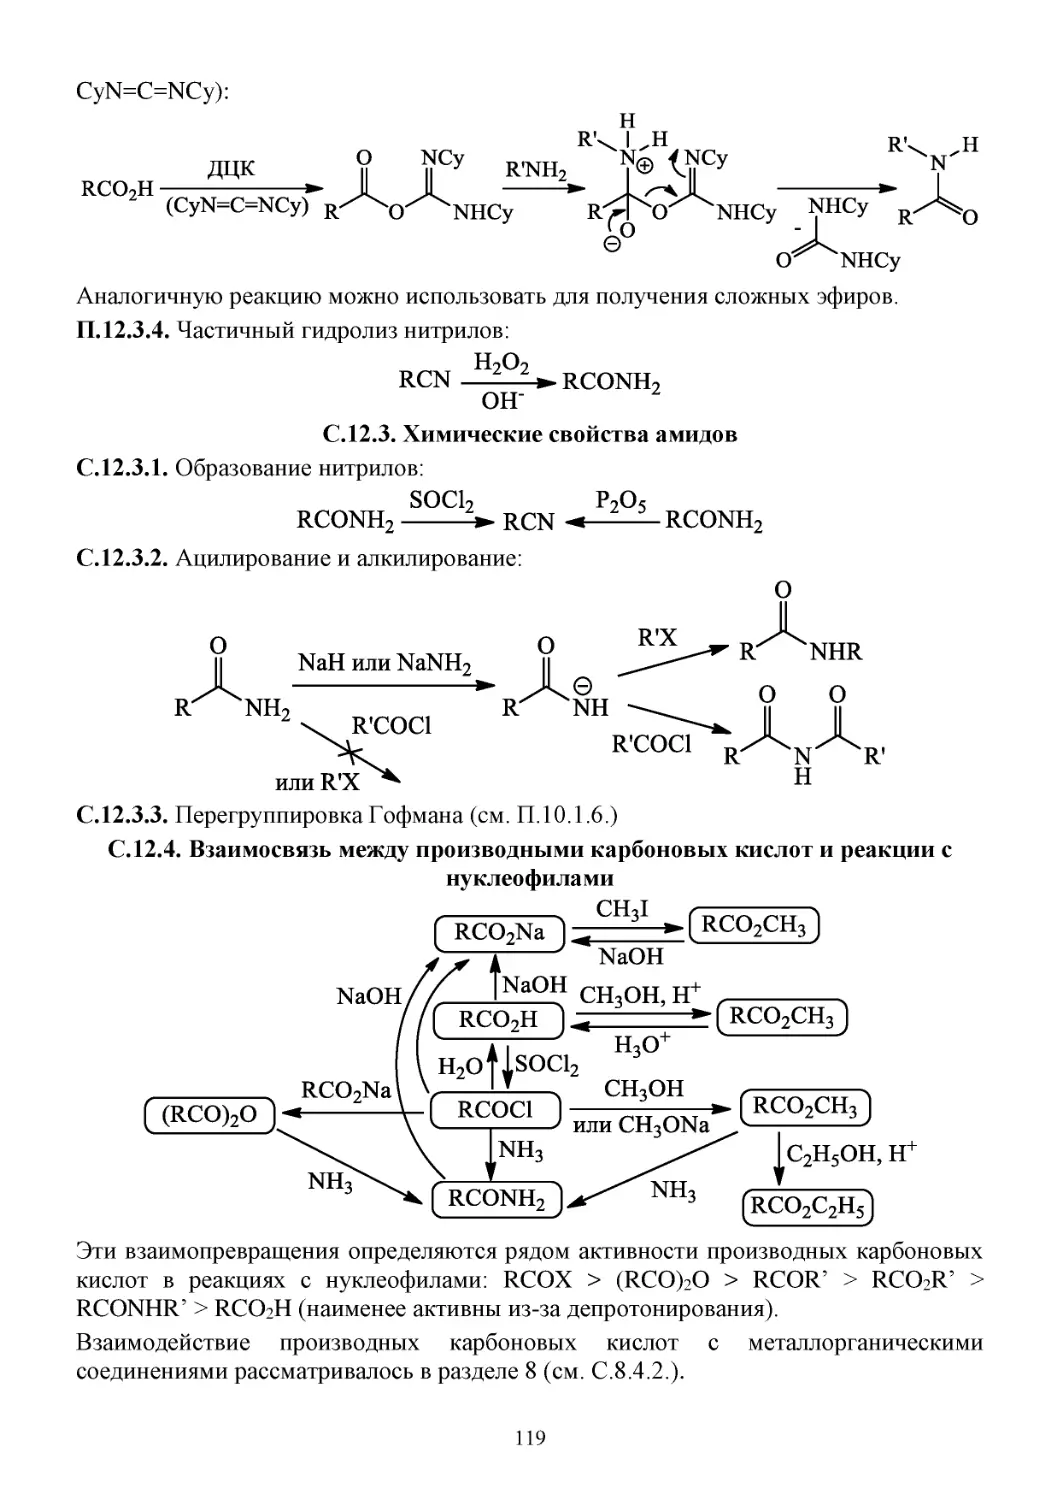 С.12.3. Химические свойства амидов
С.12.4. Взаимосвязь между производными карбоновых кислот и реакции с нуклеофилами